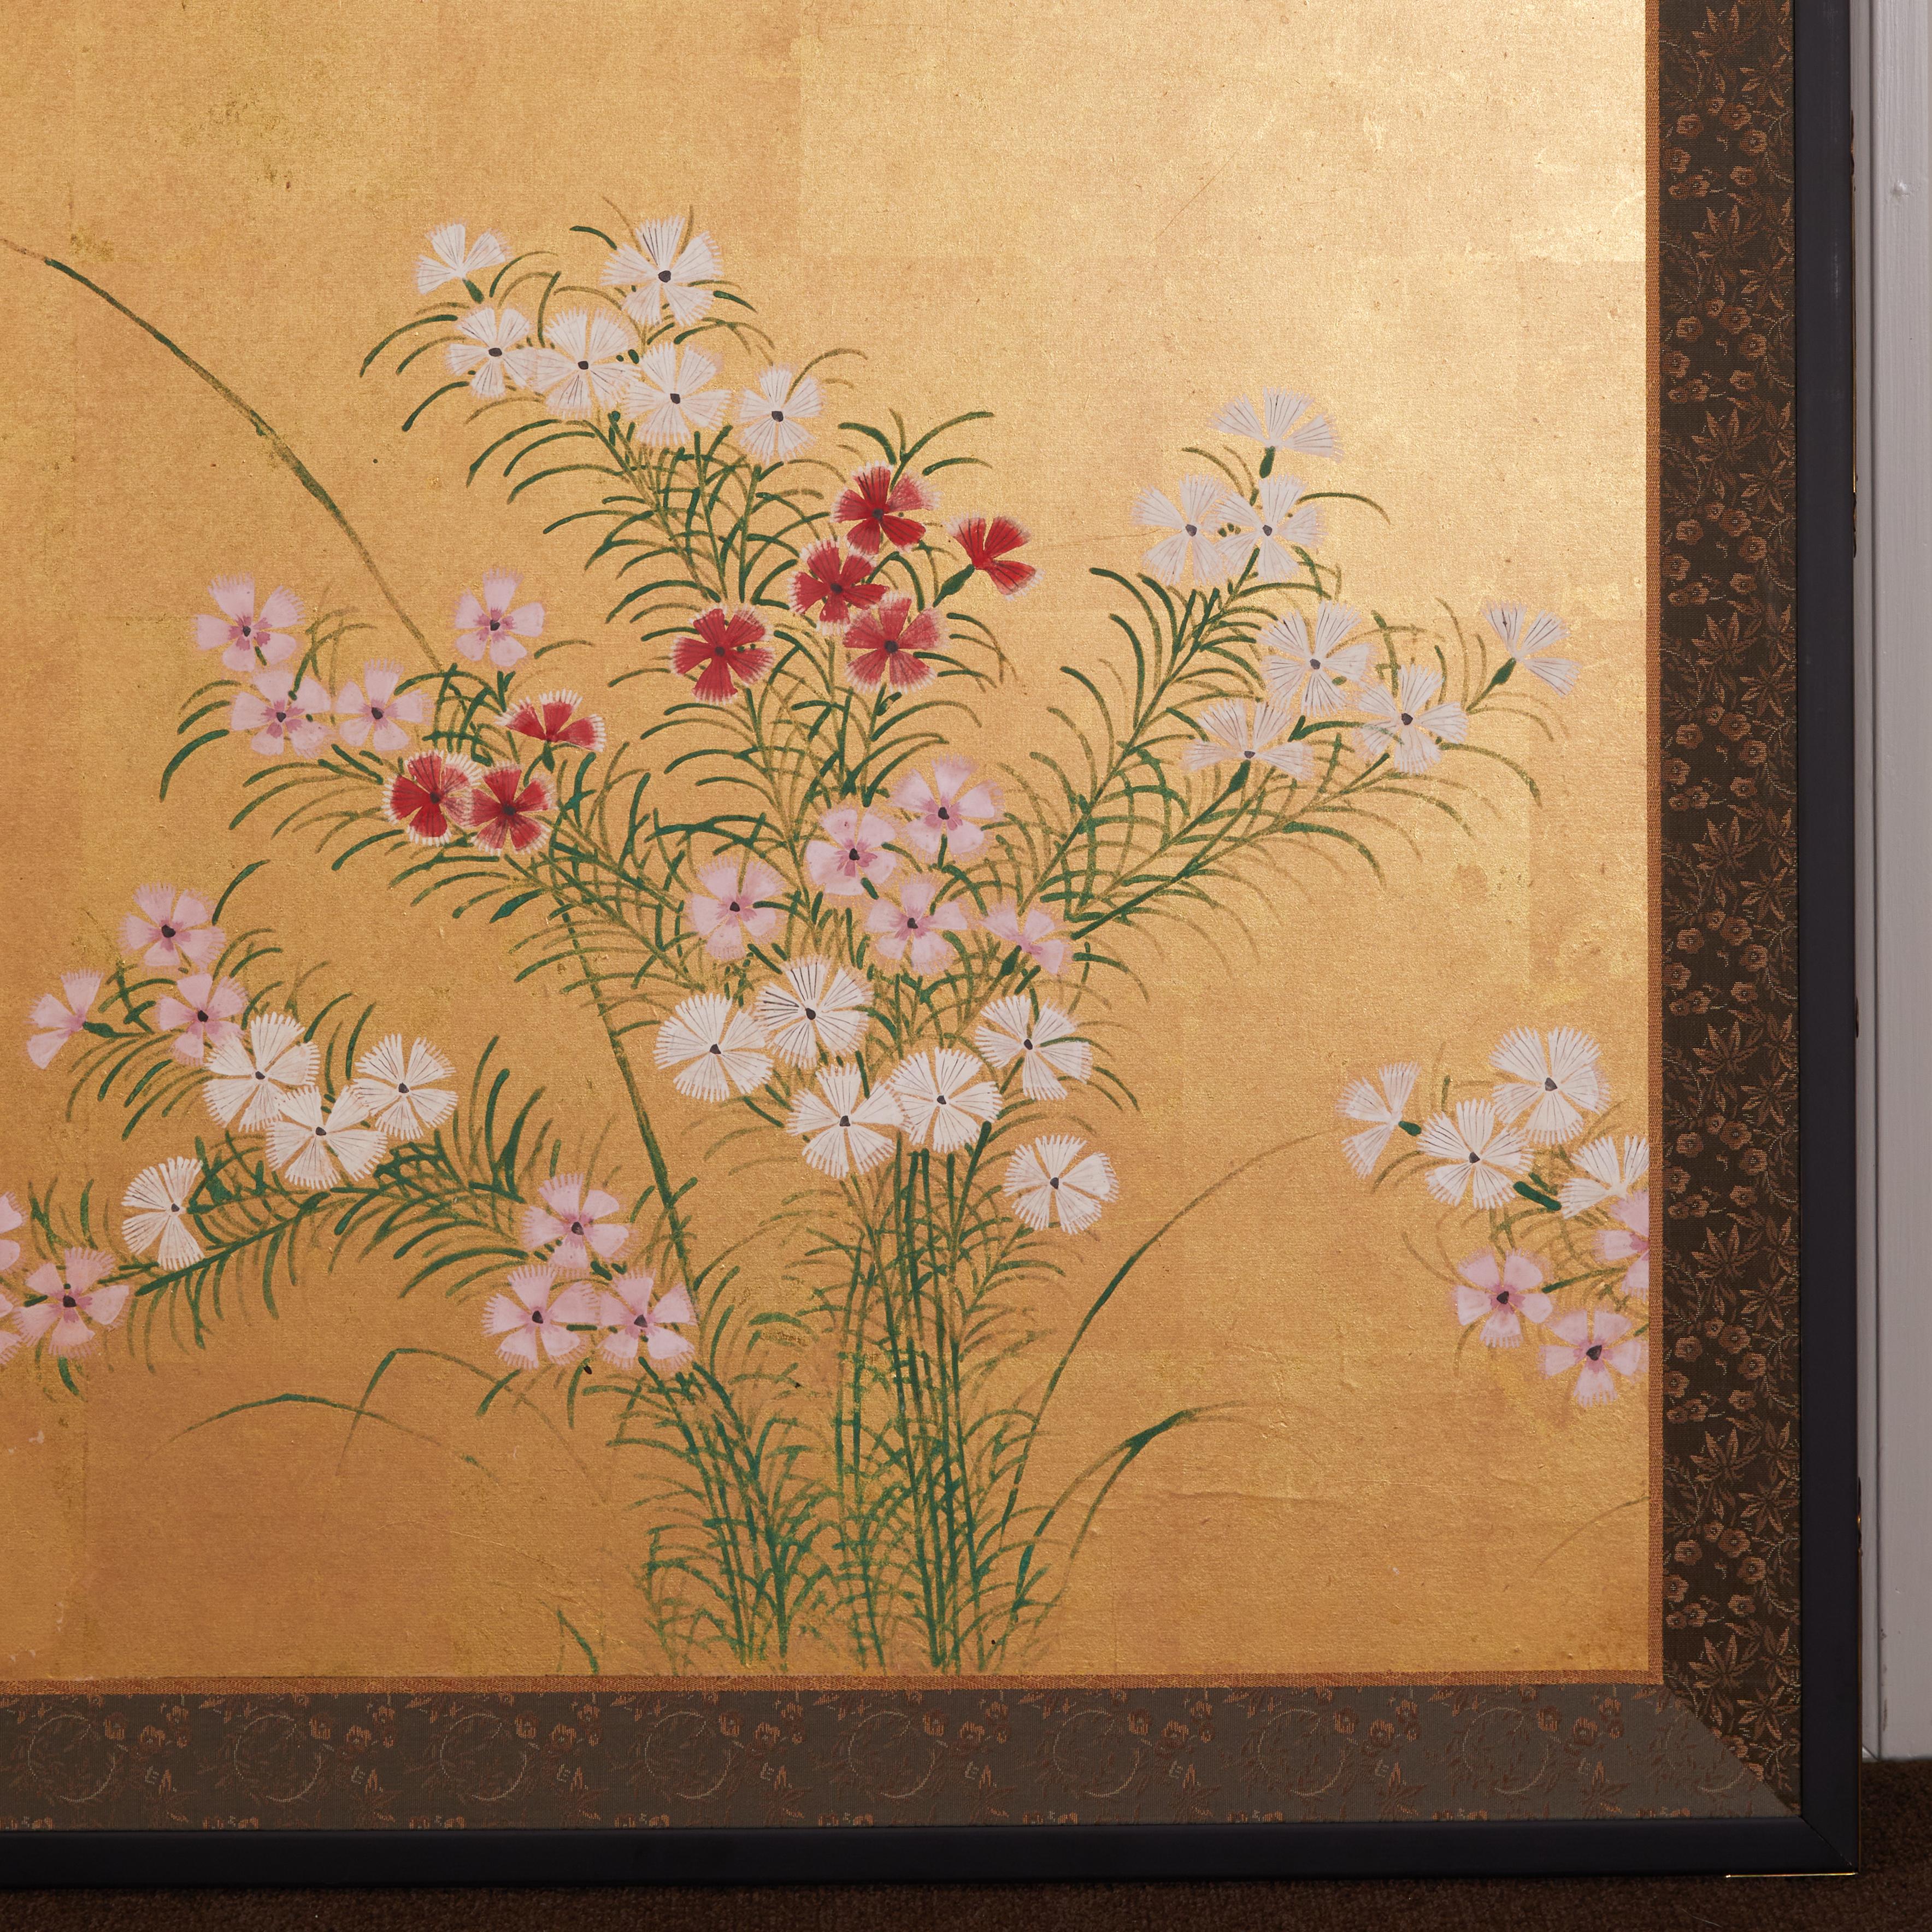 Nadeshiko, auch bekannt als gefranste Nelken, ist eine in Japan beheimatete Blütenpflanze.  Tusche, Mineralpigmente und Blattgold des 18. Jahrhunderts, mit guter Äderung, auf Maulbeerpapier.  Seidenbrokatbordüre und schwarze Lackverzierung mit